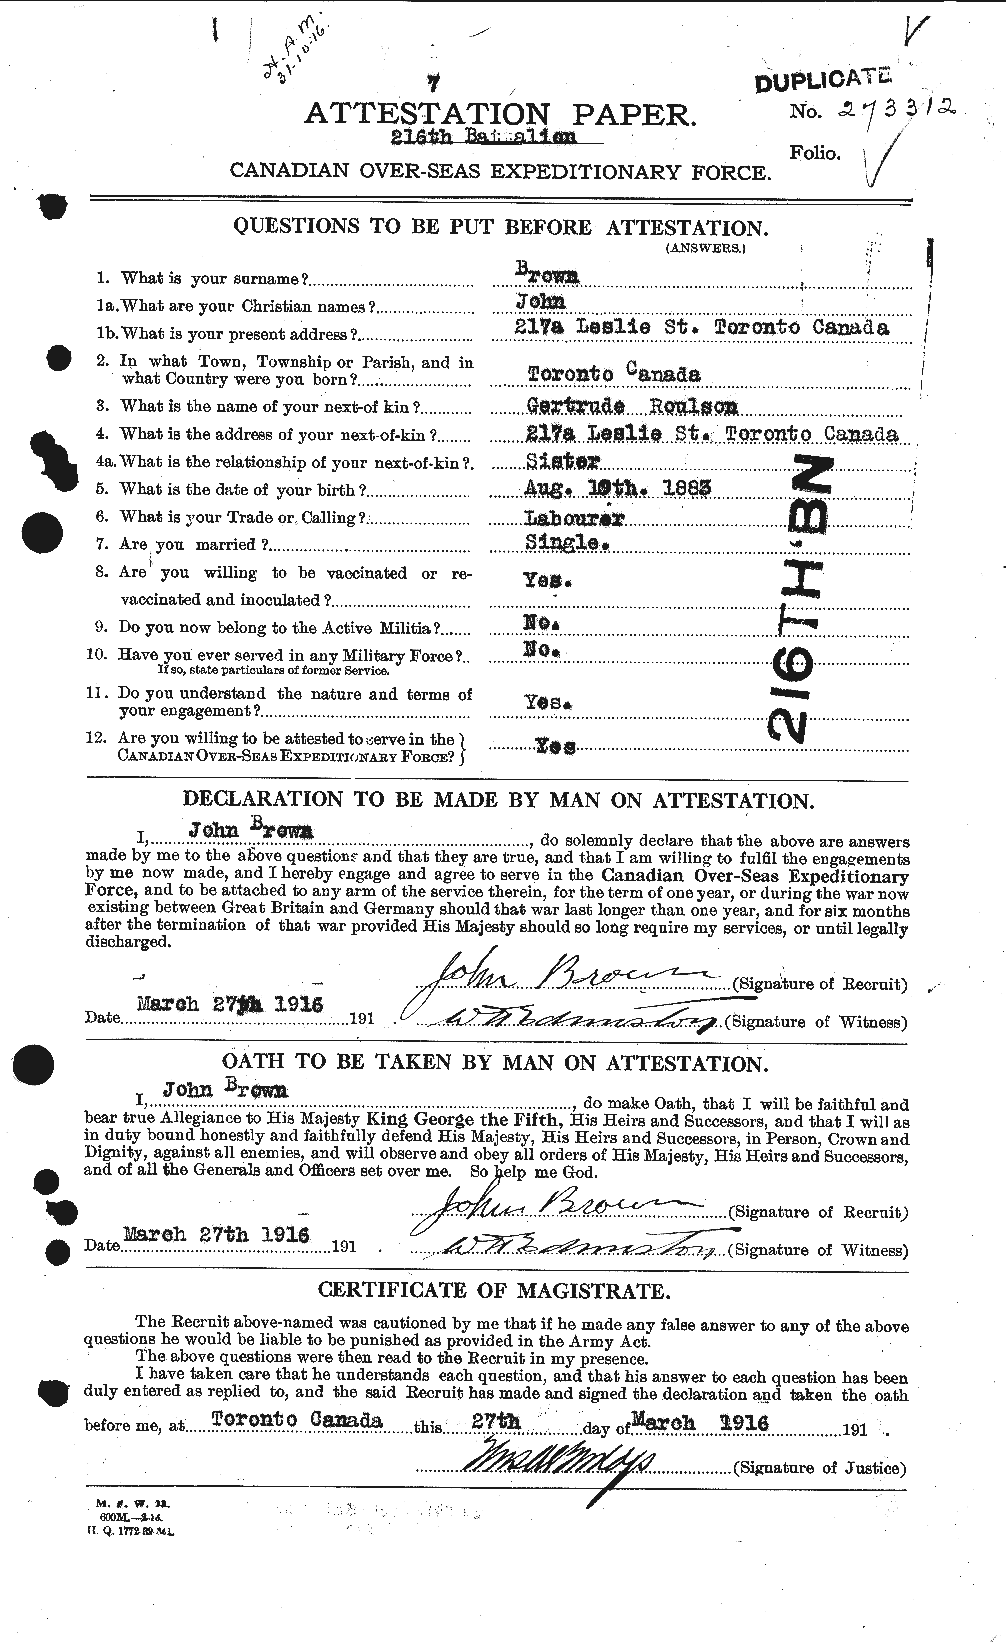 Dossiers du Personnel de la Première Guerre mondiale - CEC 264550a